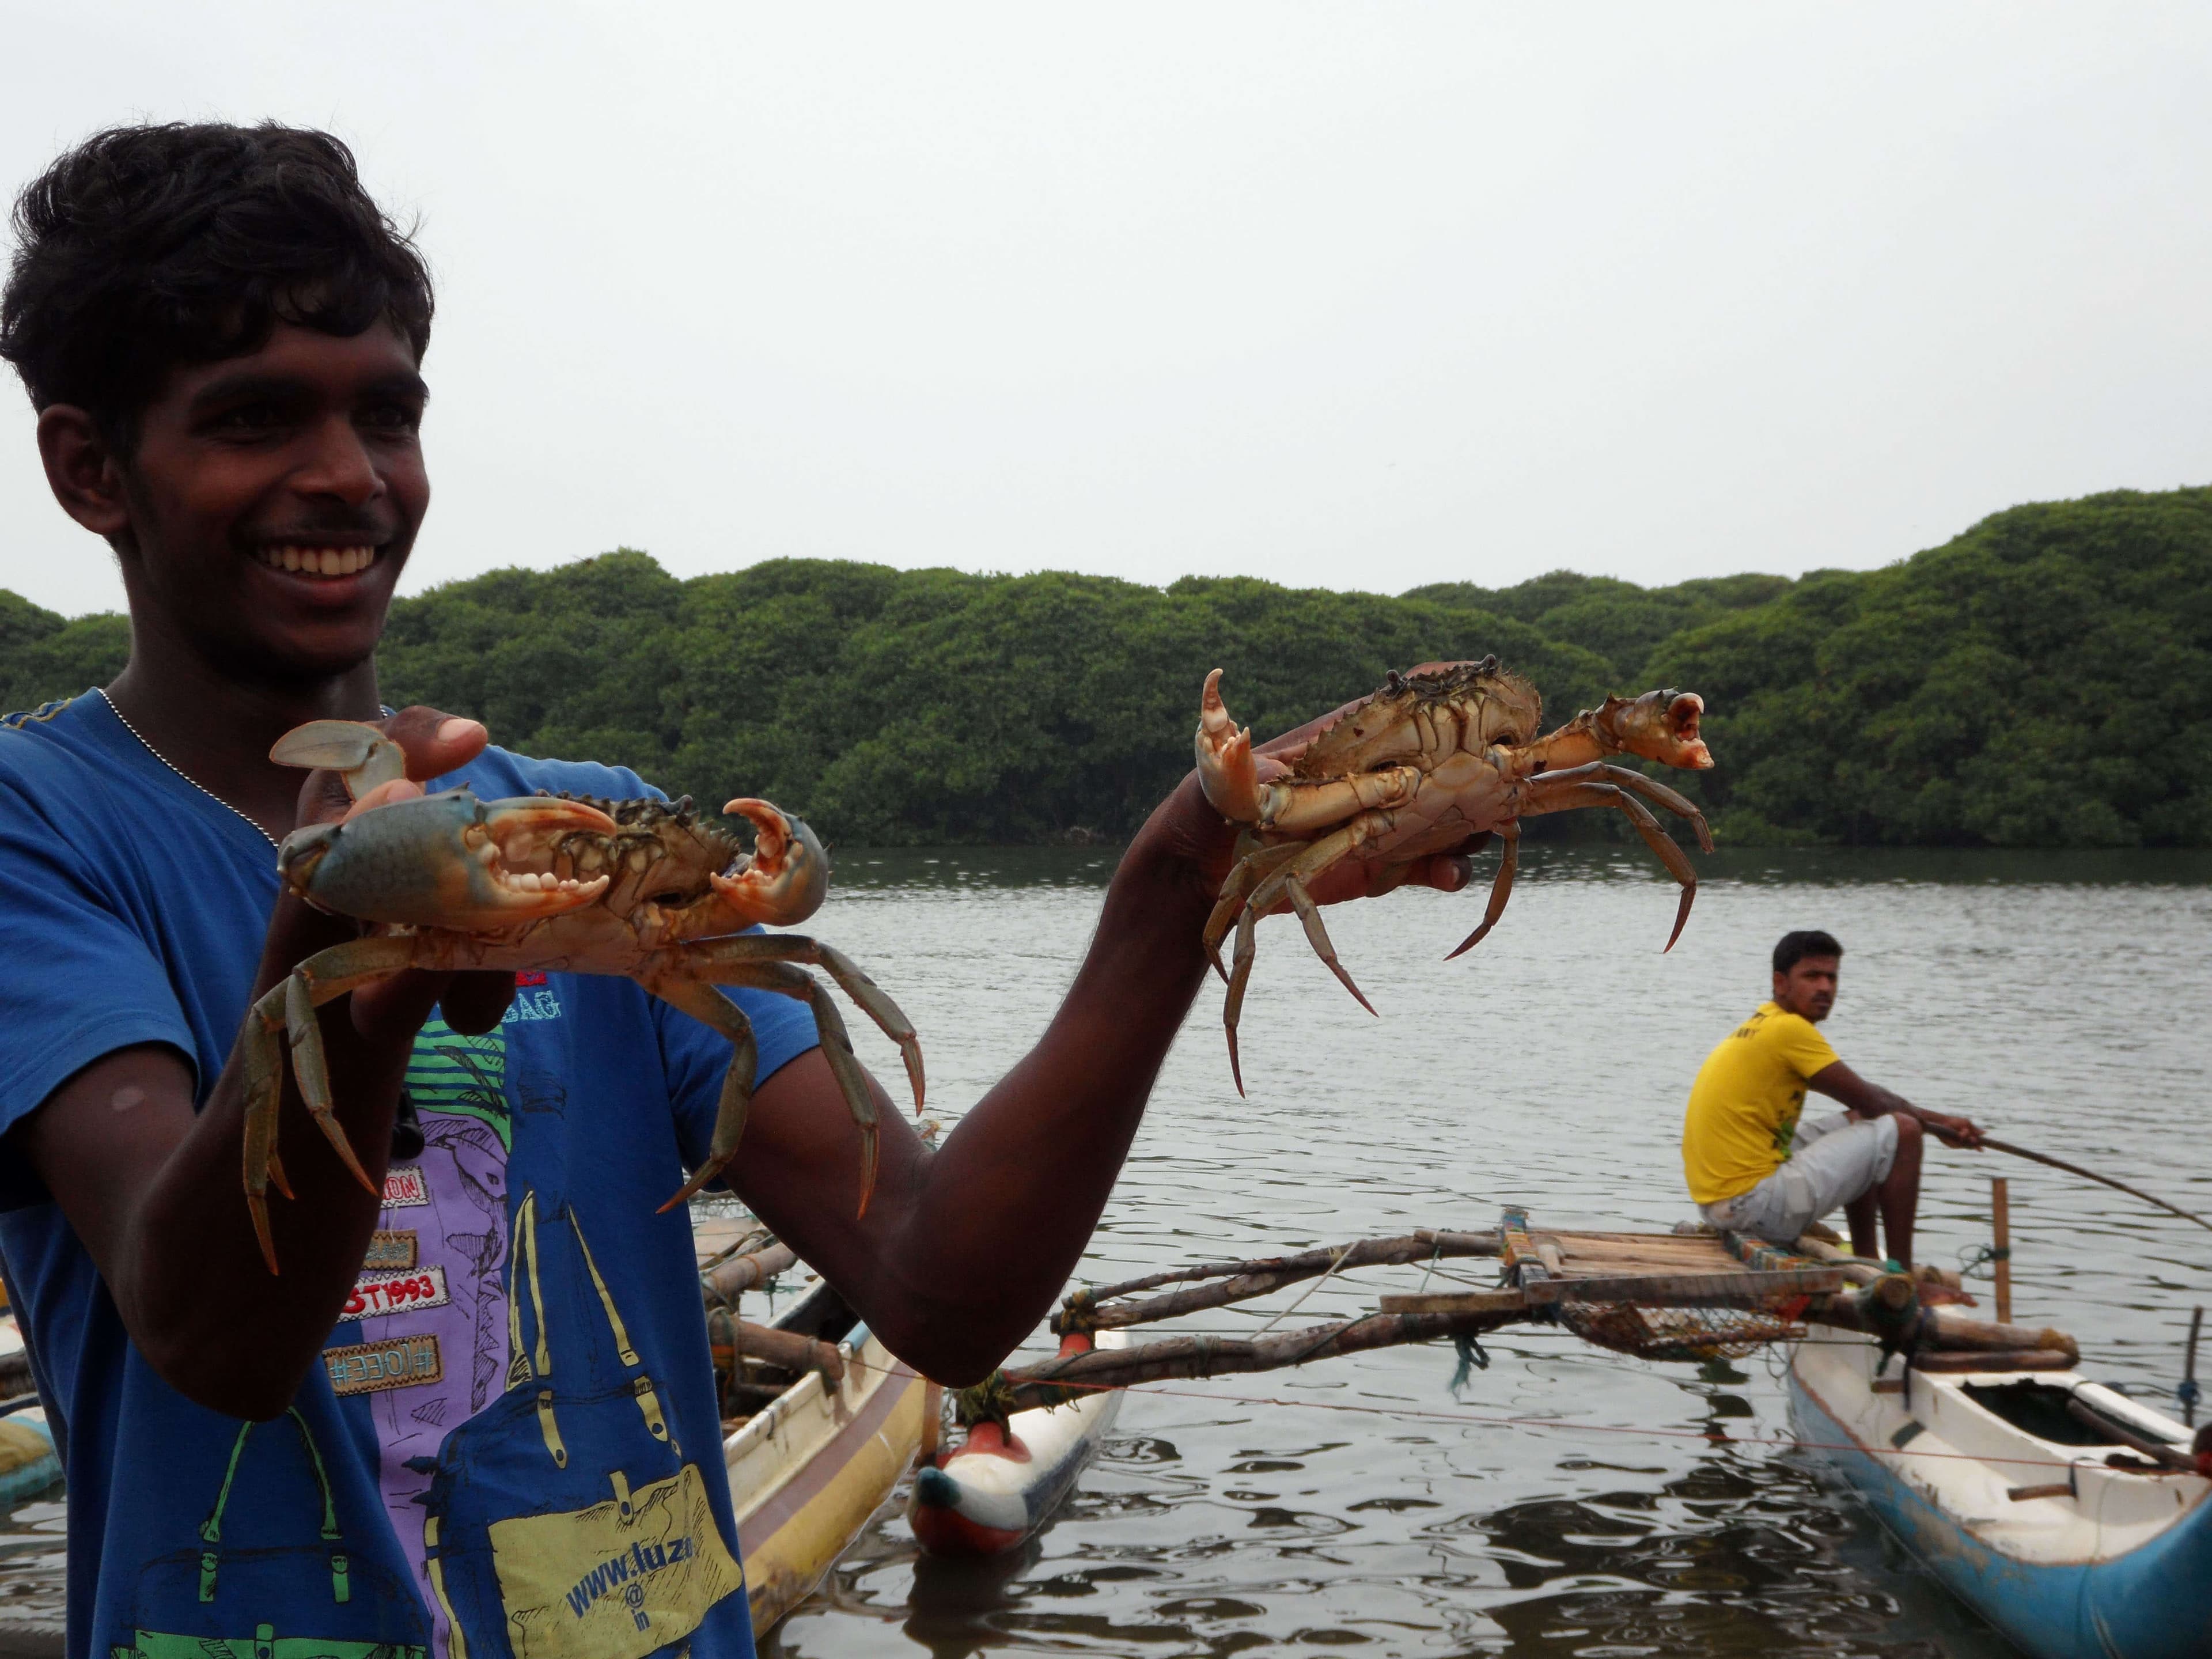 منظر تأطير سرطان البحر والجمبري في بحيرة نيجومبو في سريلانكا